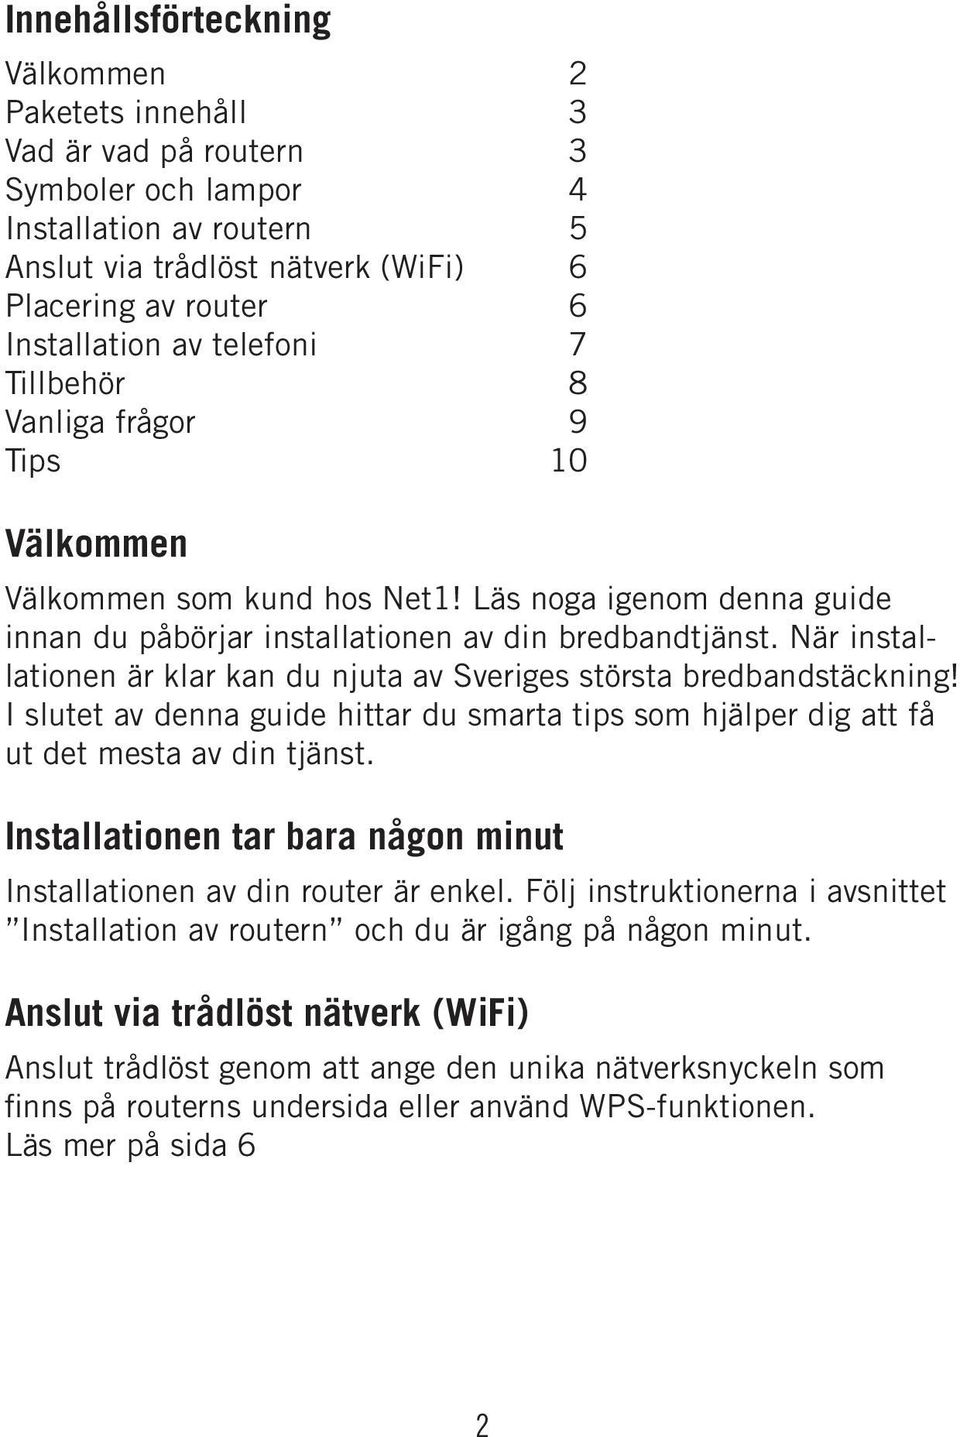 När installationen är klar kan du njuta av Sveriges största bredbandstäckning! I slutet av denna guide hittar du smarta tips som hjälper dig att få ut det mesta av din tjänst.